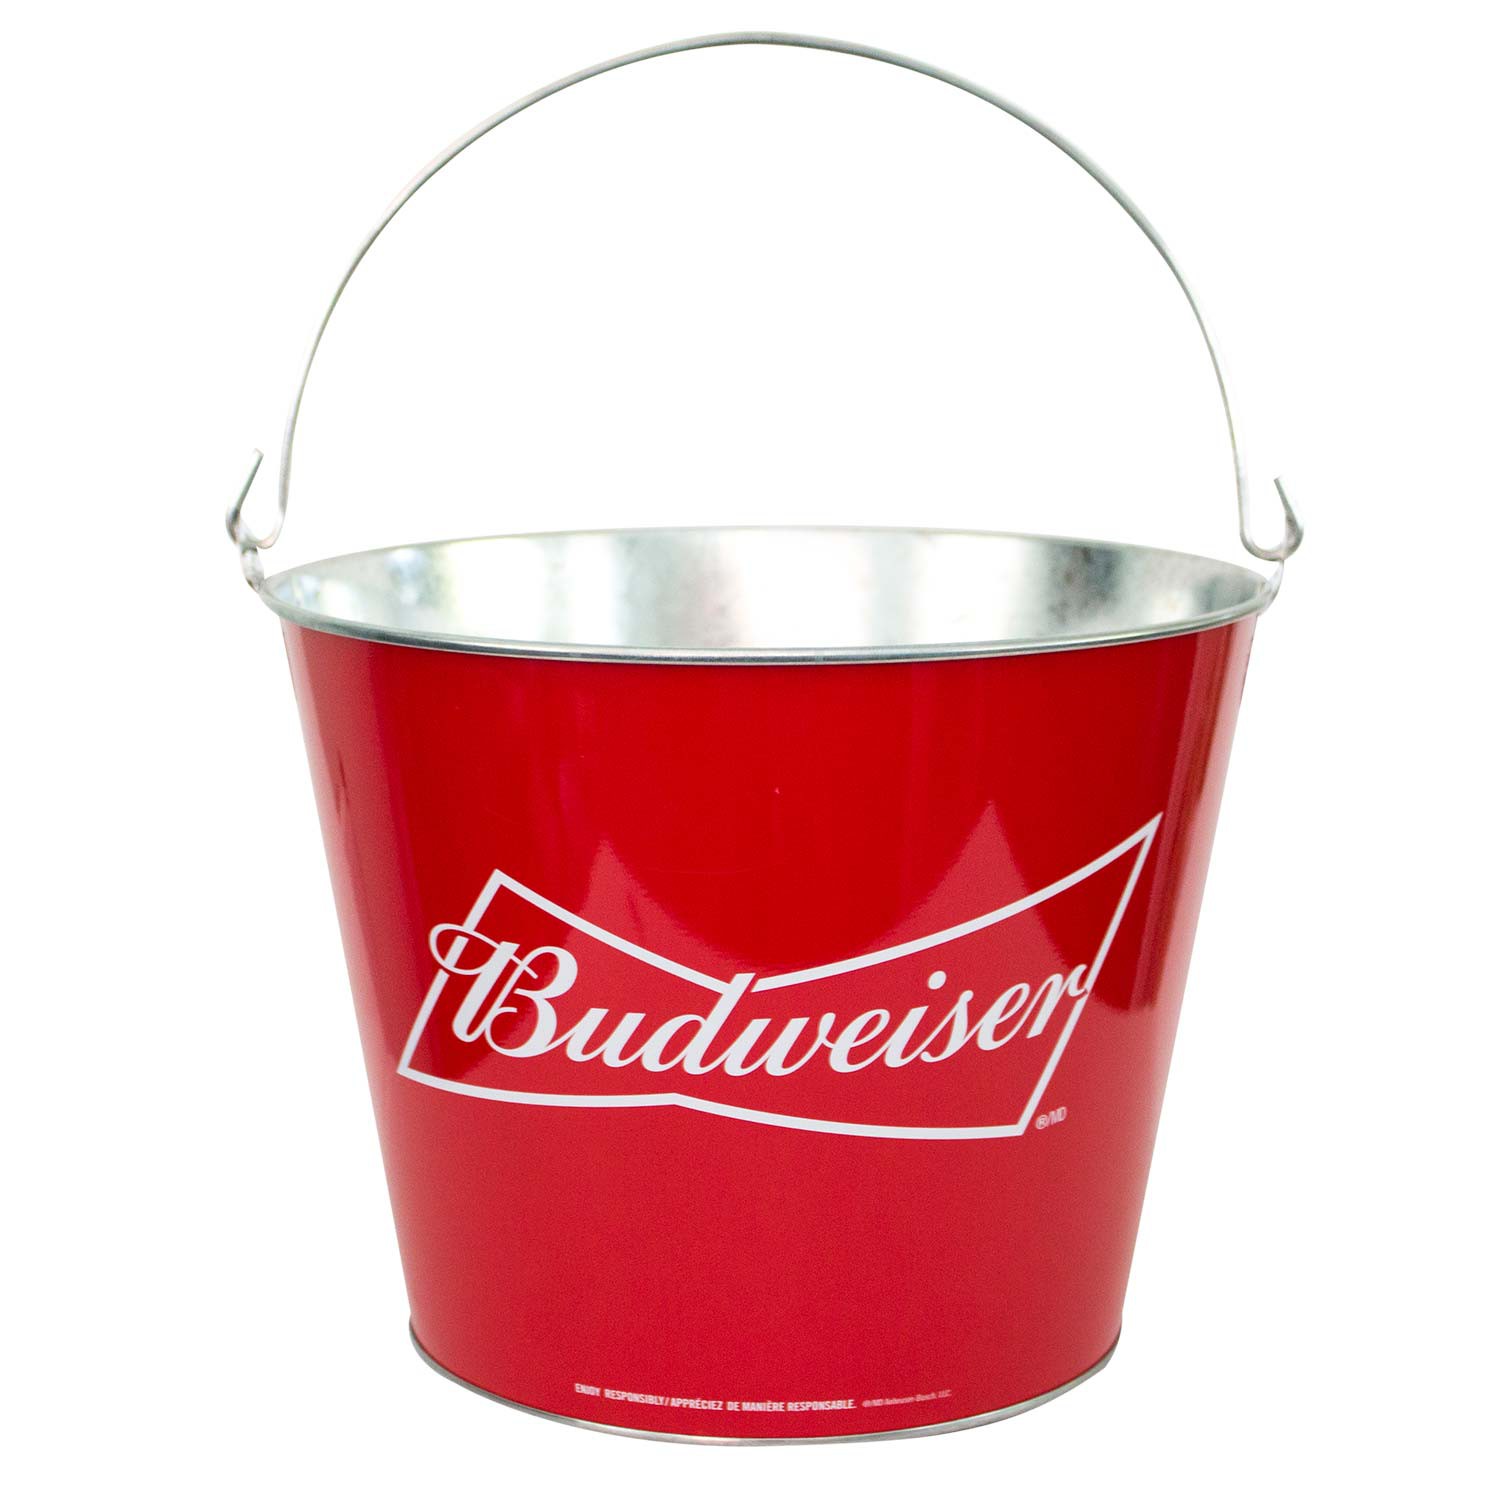 Budweiser Red Beer Bucket